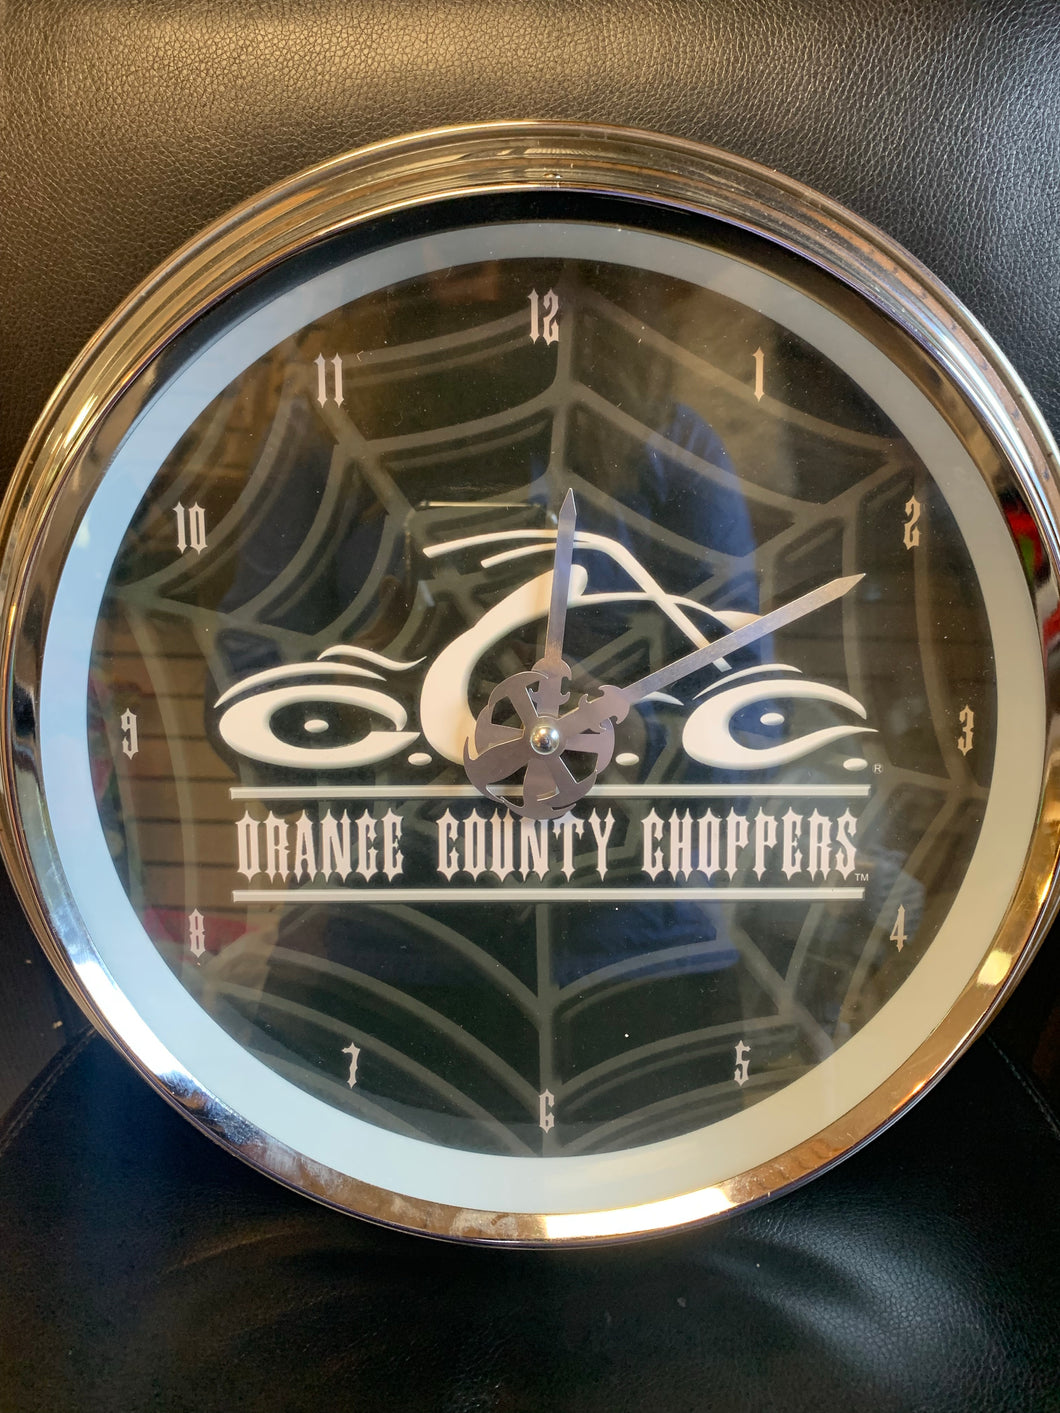 Reloj de pared de helicópteros del condado de Orange